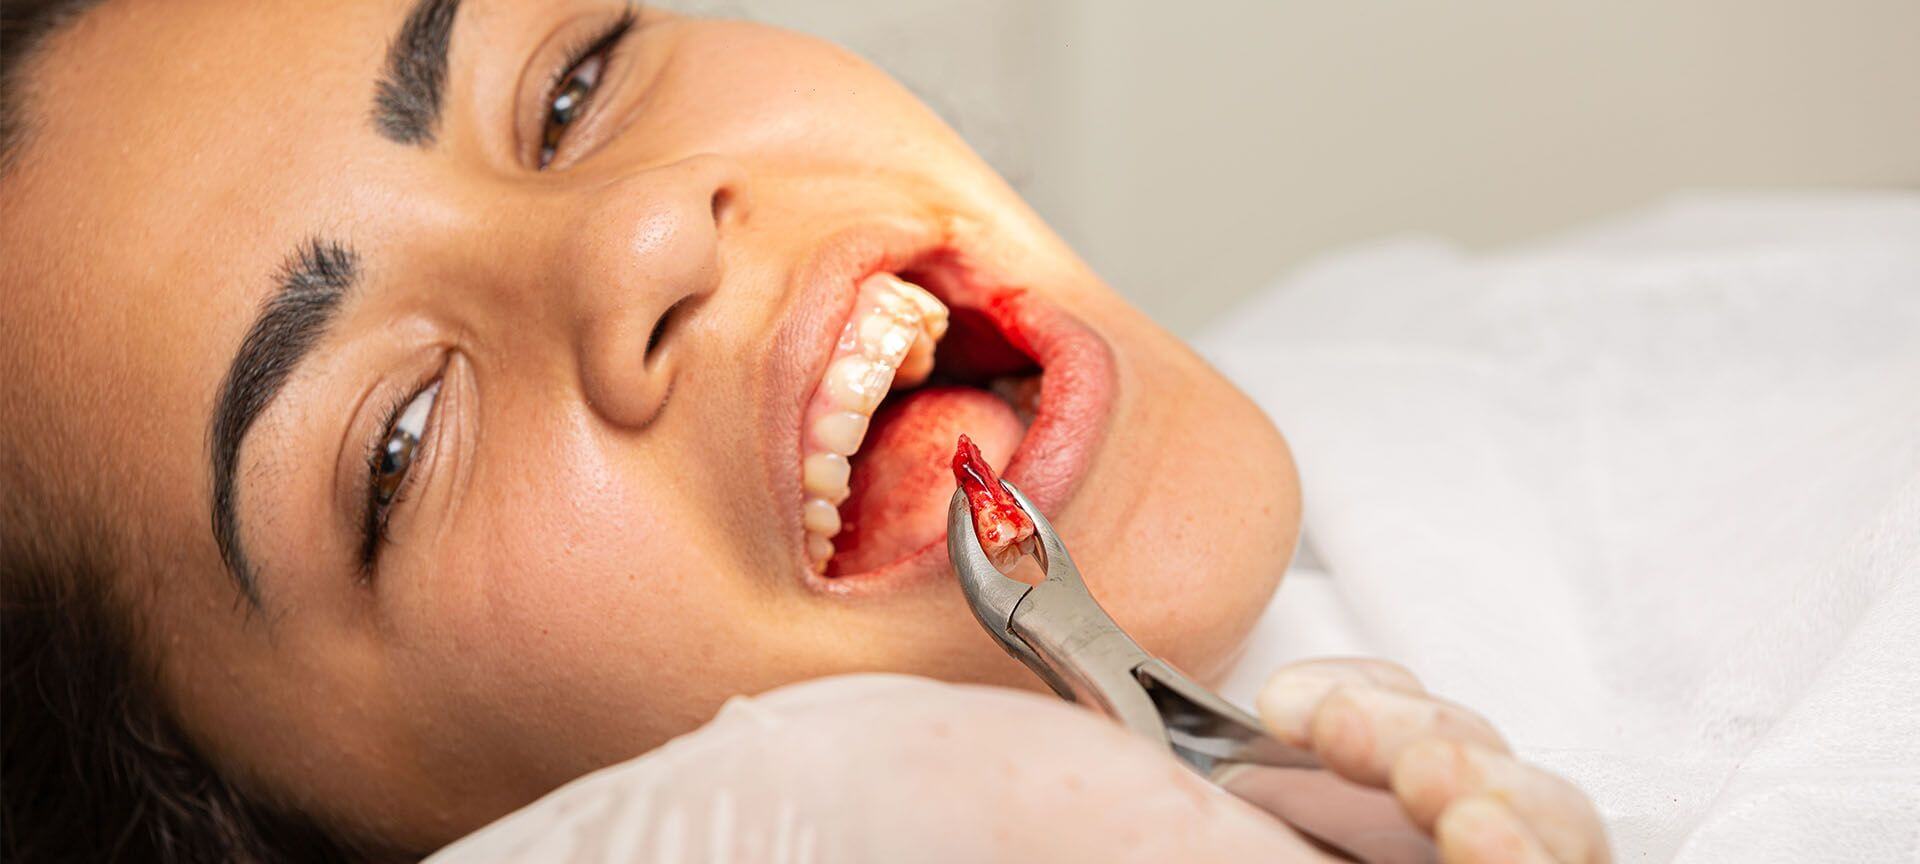 जानें दांत निकलवाने के बाद किन-किन बातों का ध्यान रखना चाहिए?